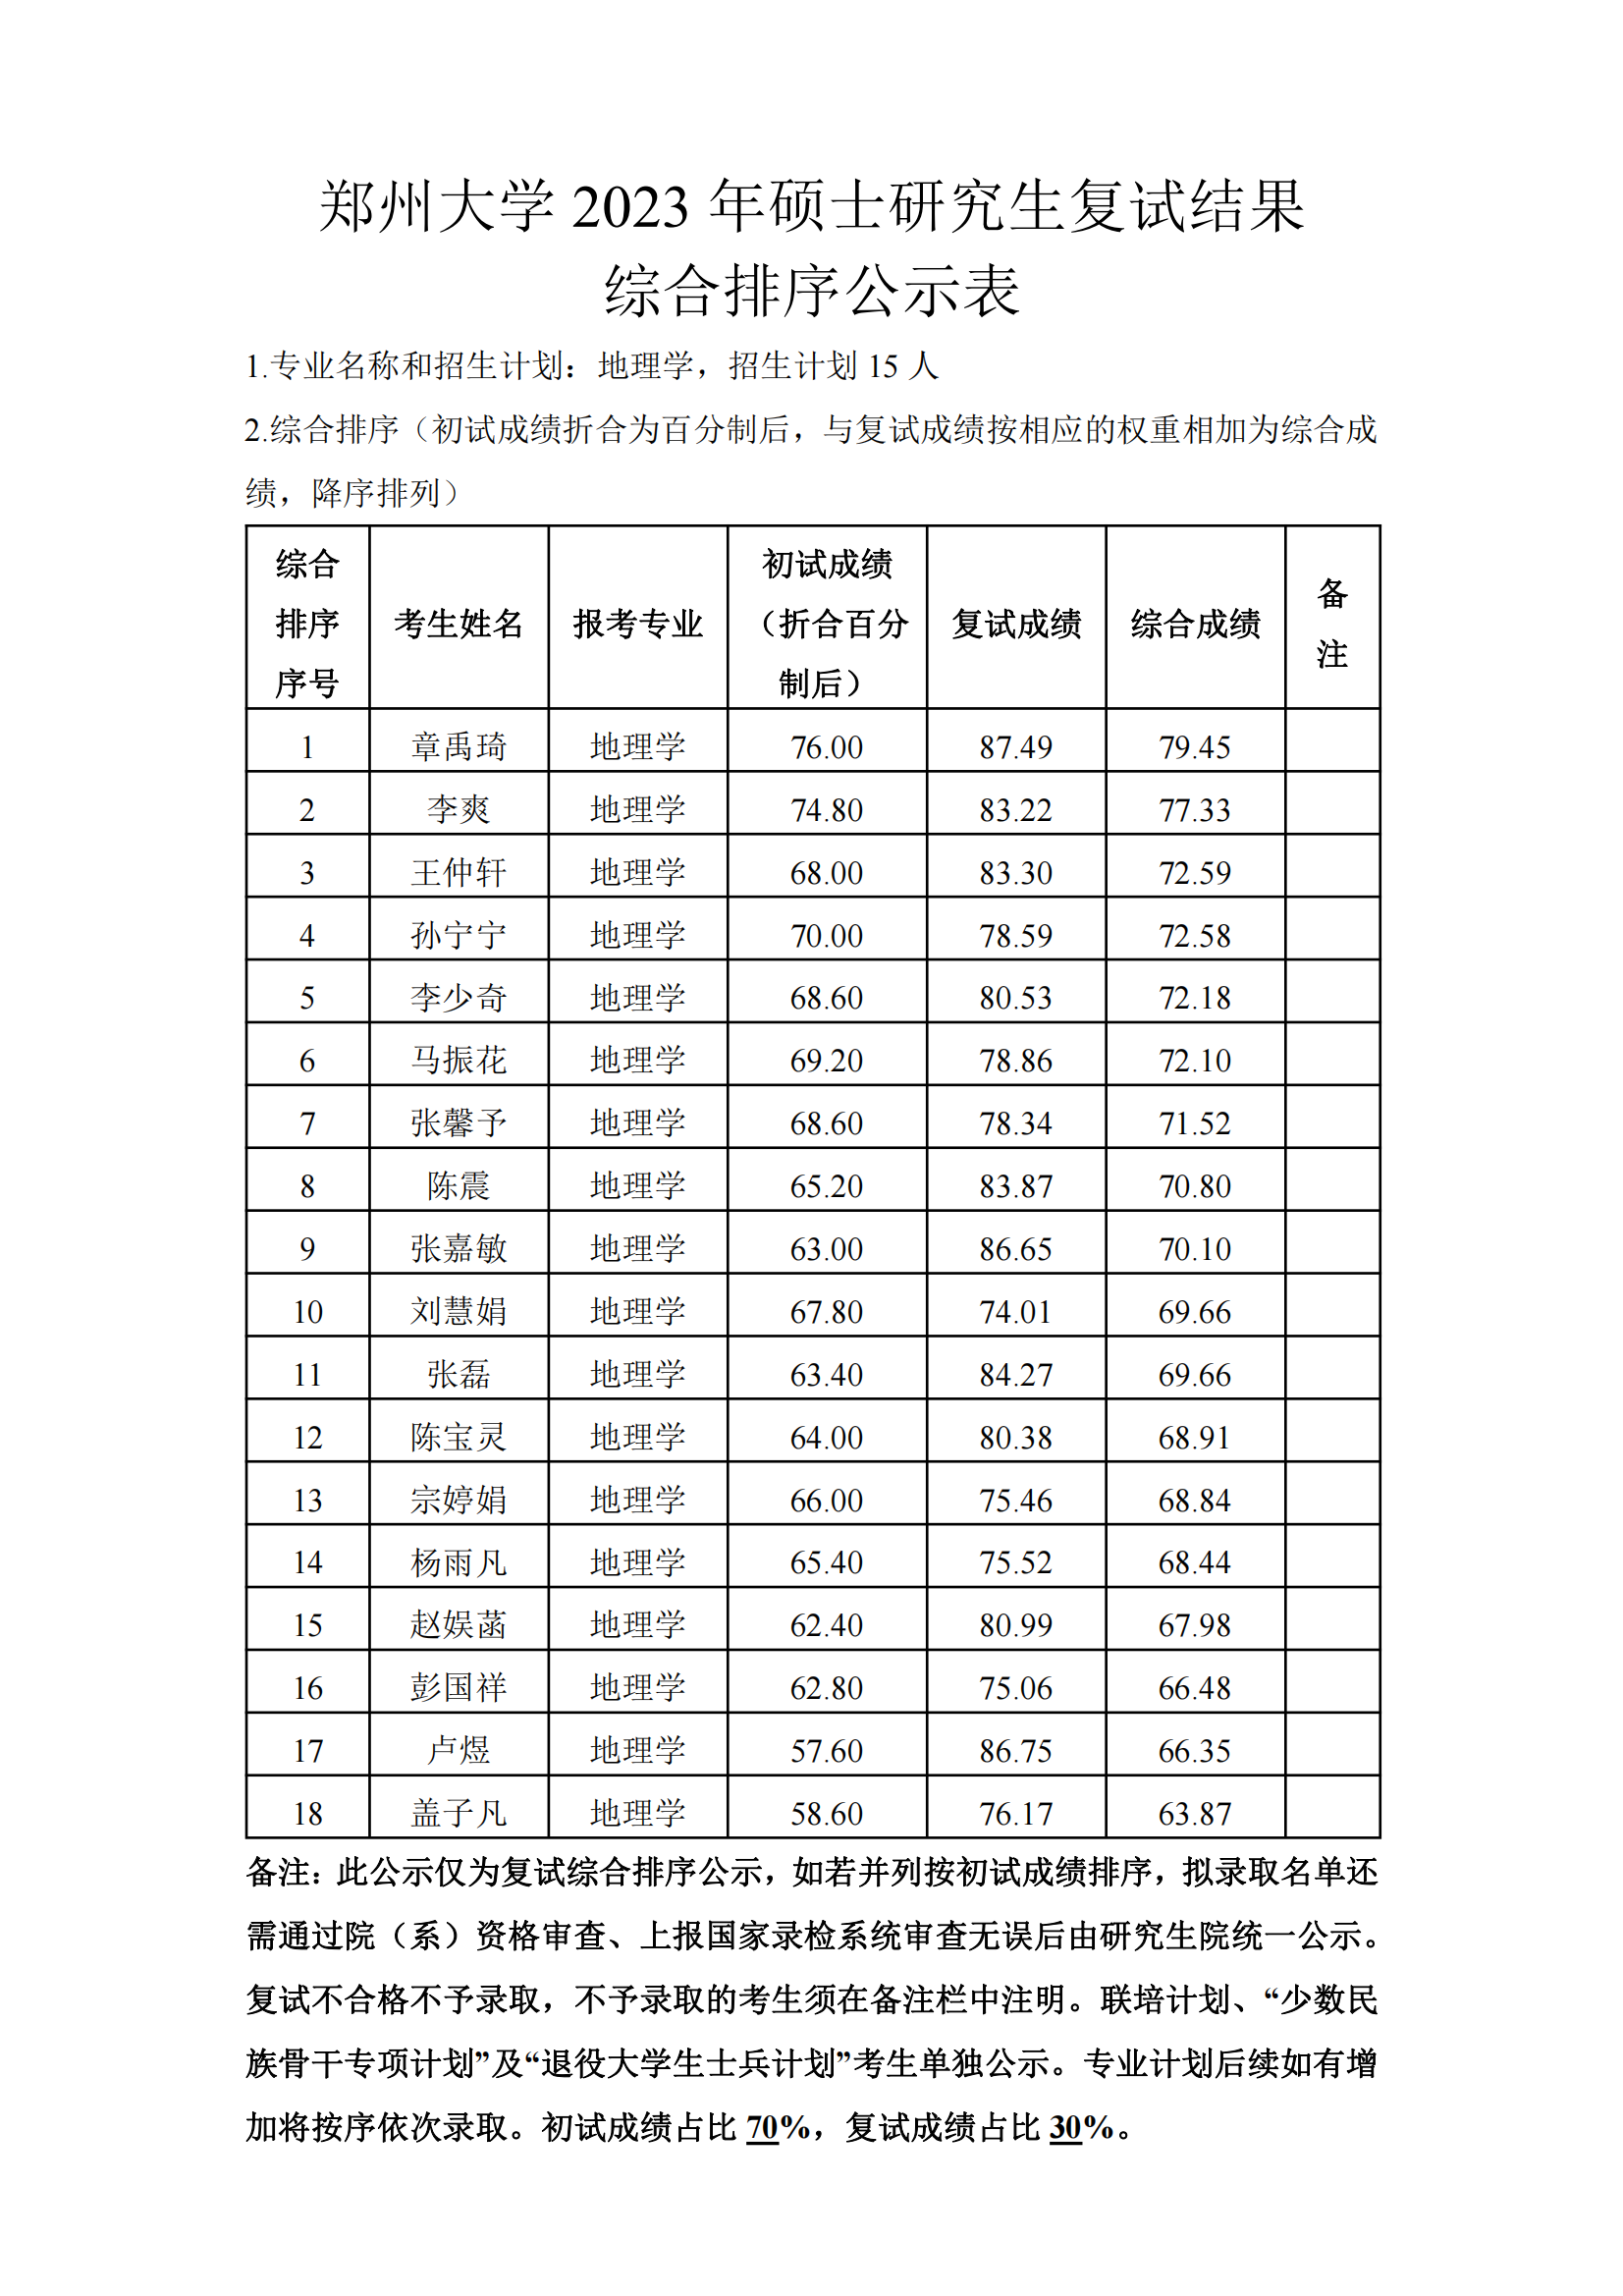 郑州大学地球科学与技术学院2023年硕士研究生复试结果综合排序公示表（地理学）_00.png